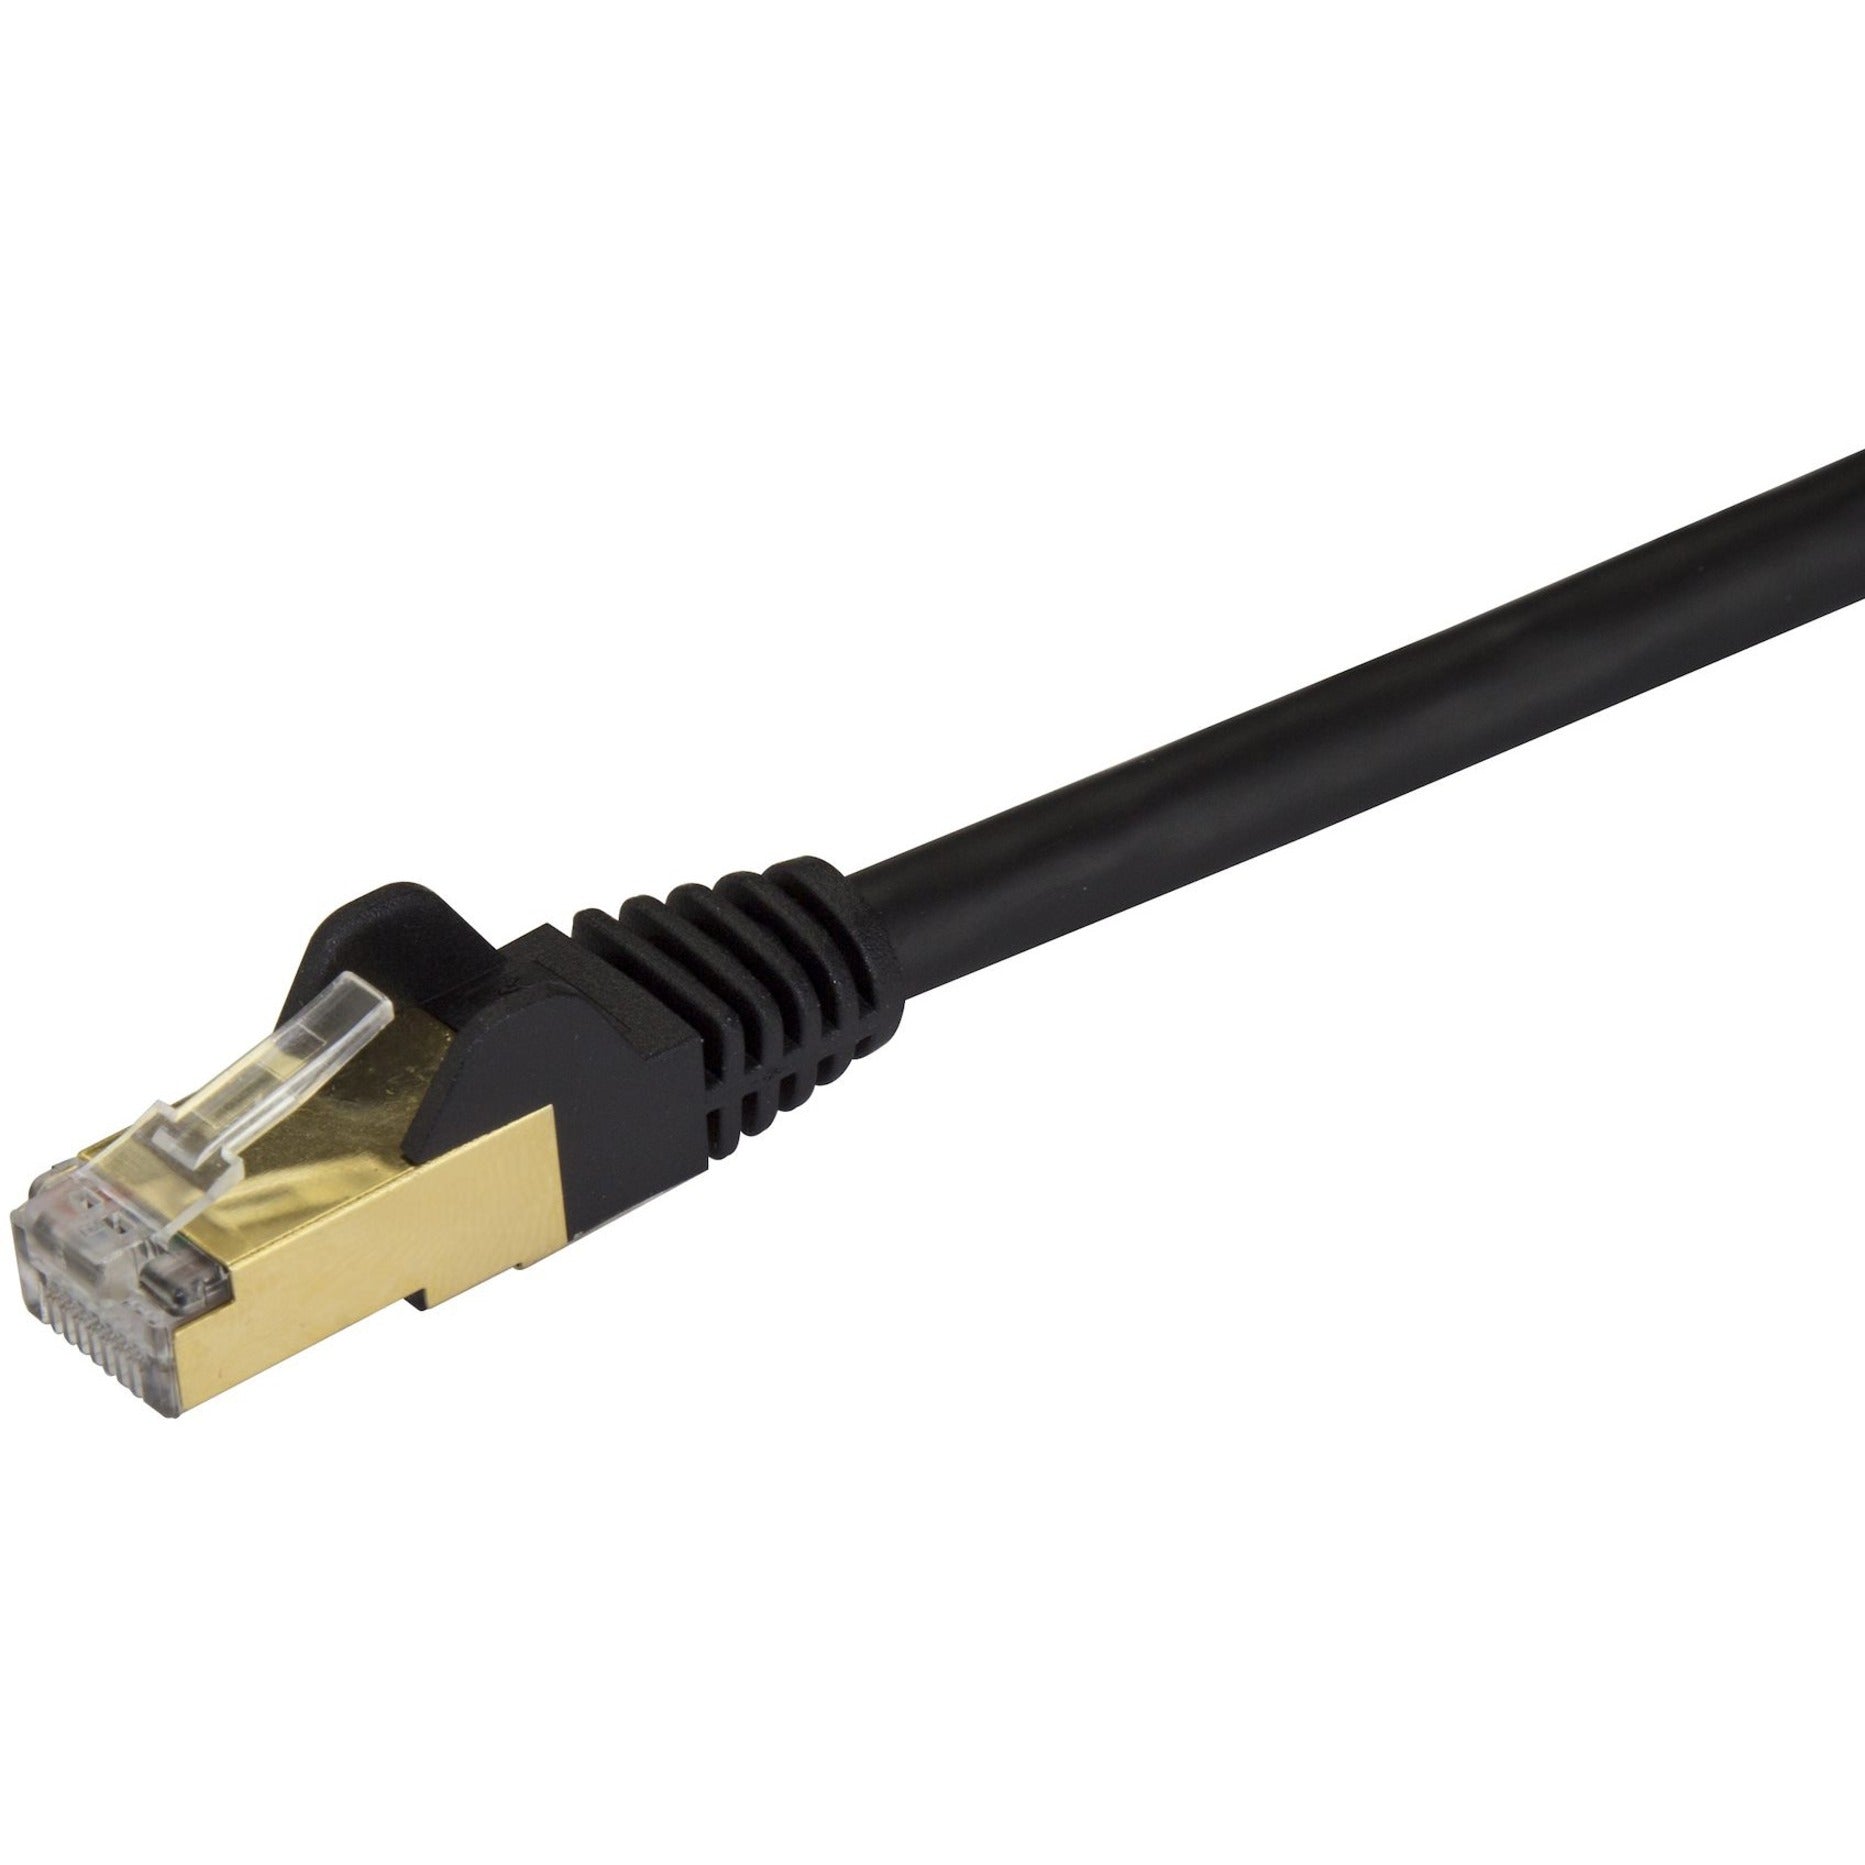 StarTech.com C6ASPAT15BK Cat6a Ethernet Patch Cable - Schermato (STP) - 15 ft. Nero Cavo Ethernet Lungo